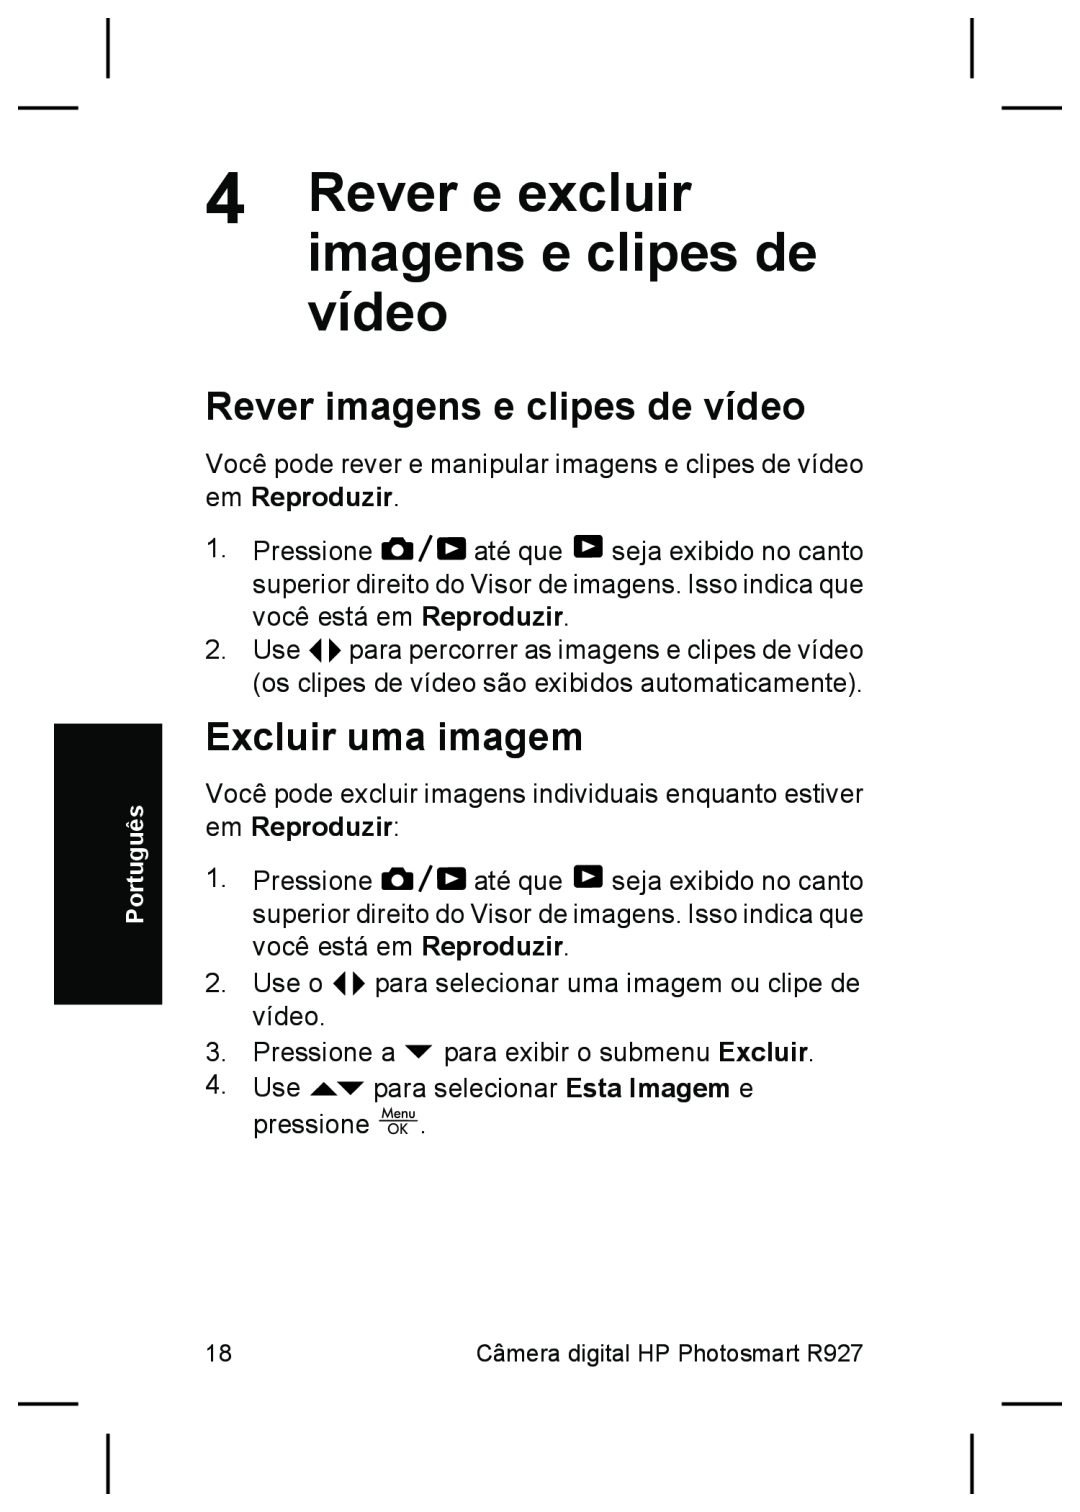 HP R927 manual Rever e excluir, Rever imagens e clipes de vídeo, Excluir uma imagem 